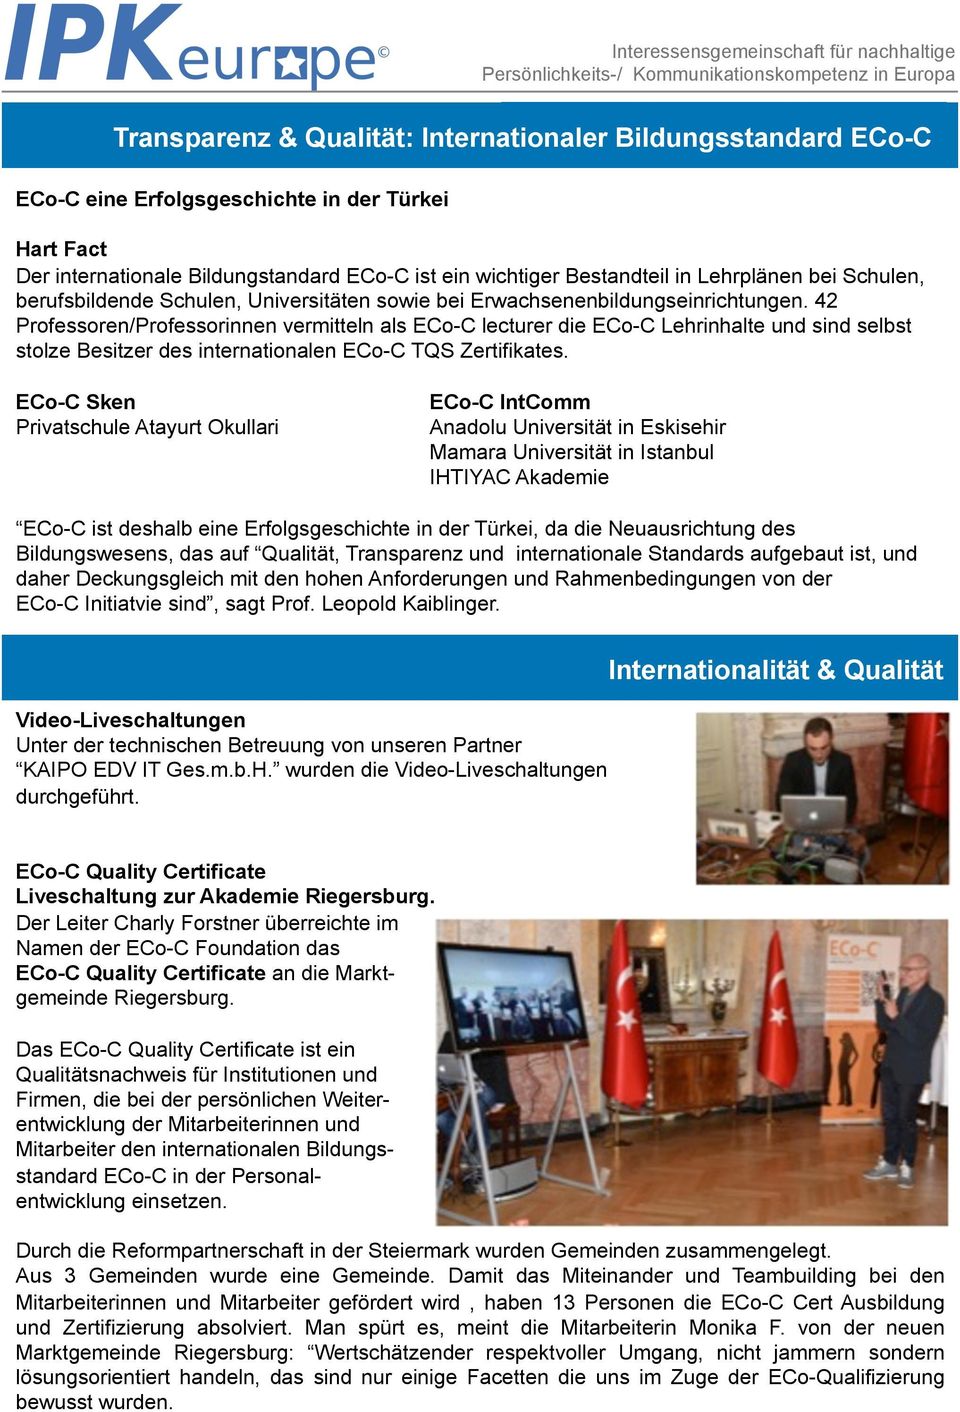 42 Professoren/Professorinnen vermitteln als ECo-C lecturer die ECo-C Lehrinhalte und sind selbst stolze Besitzer des internationalen ECo-C TQS Zertifikates.